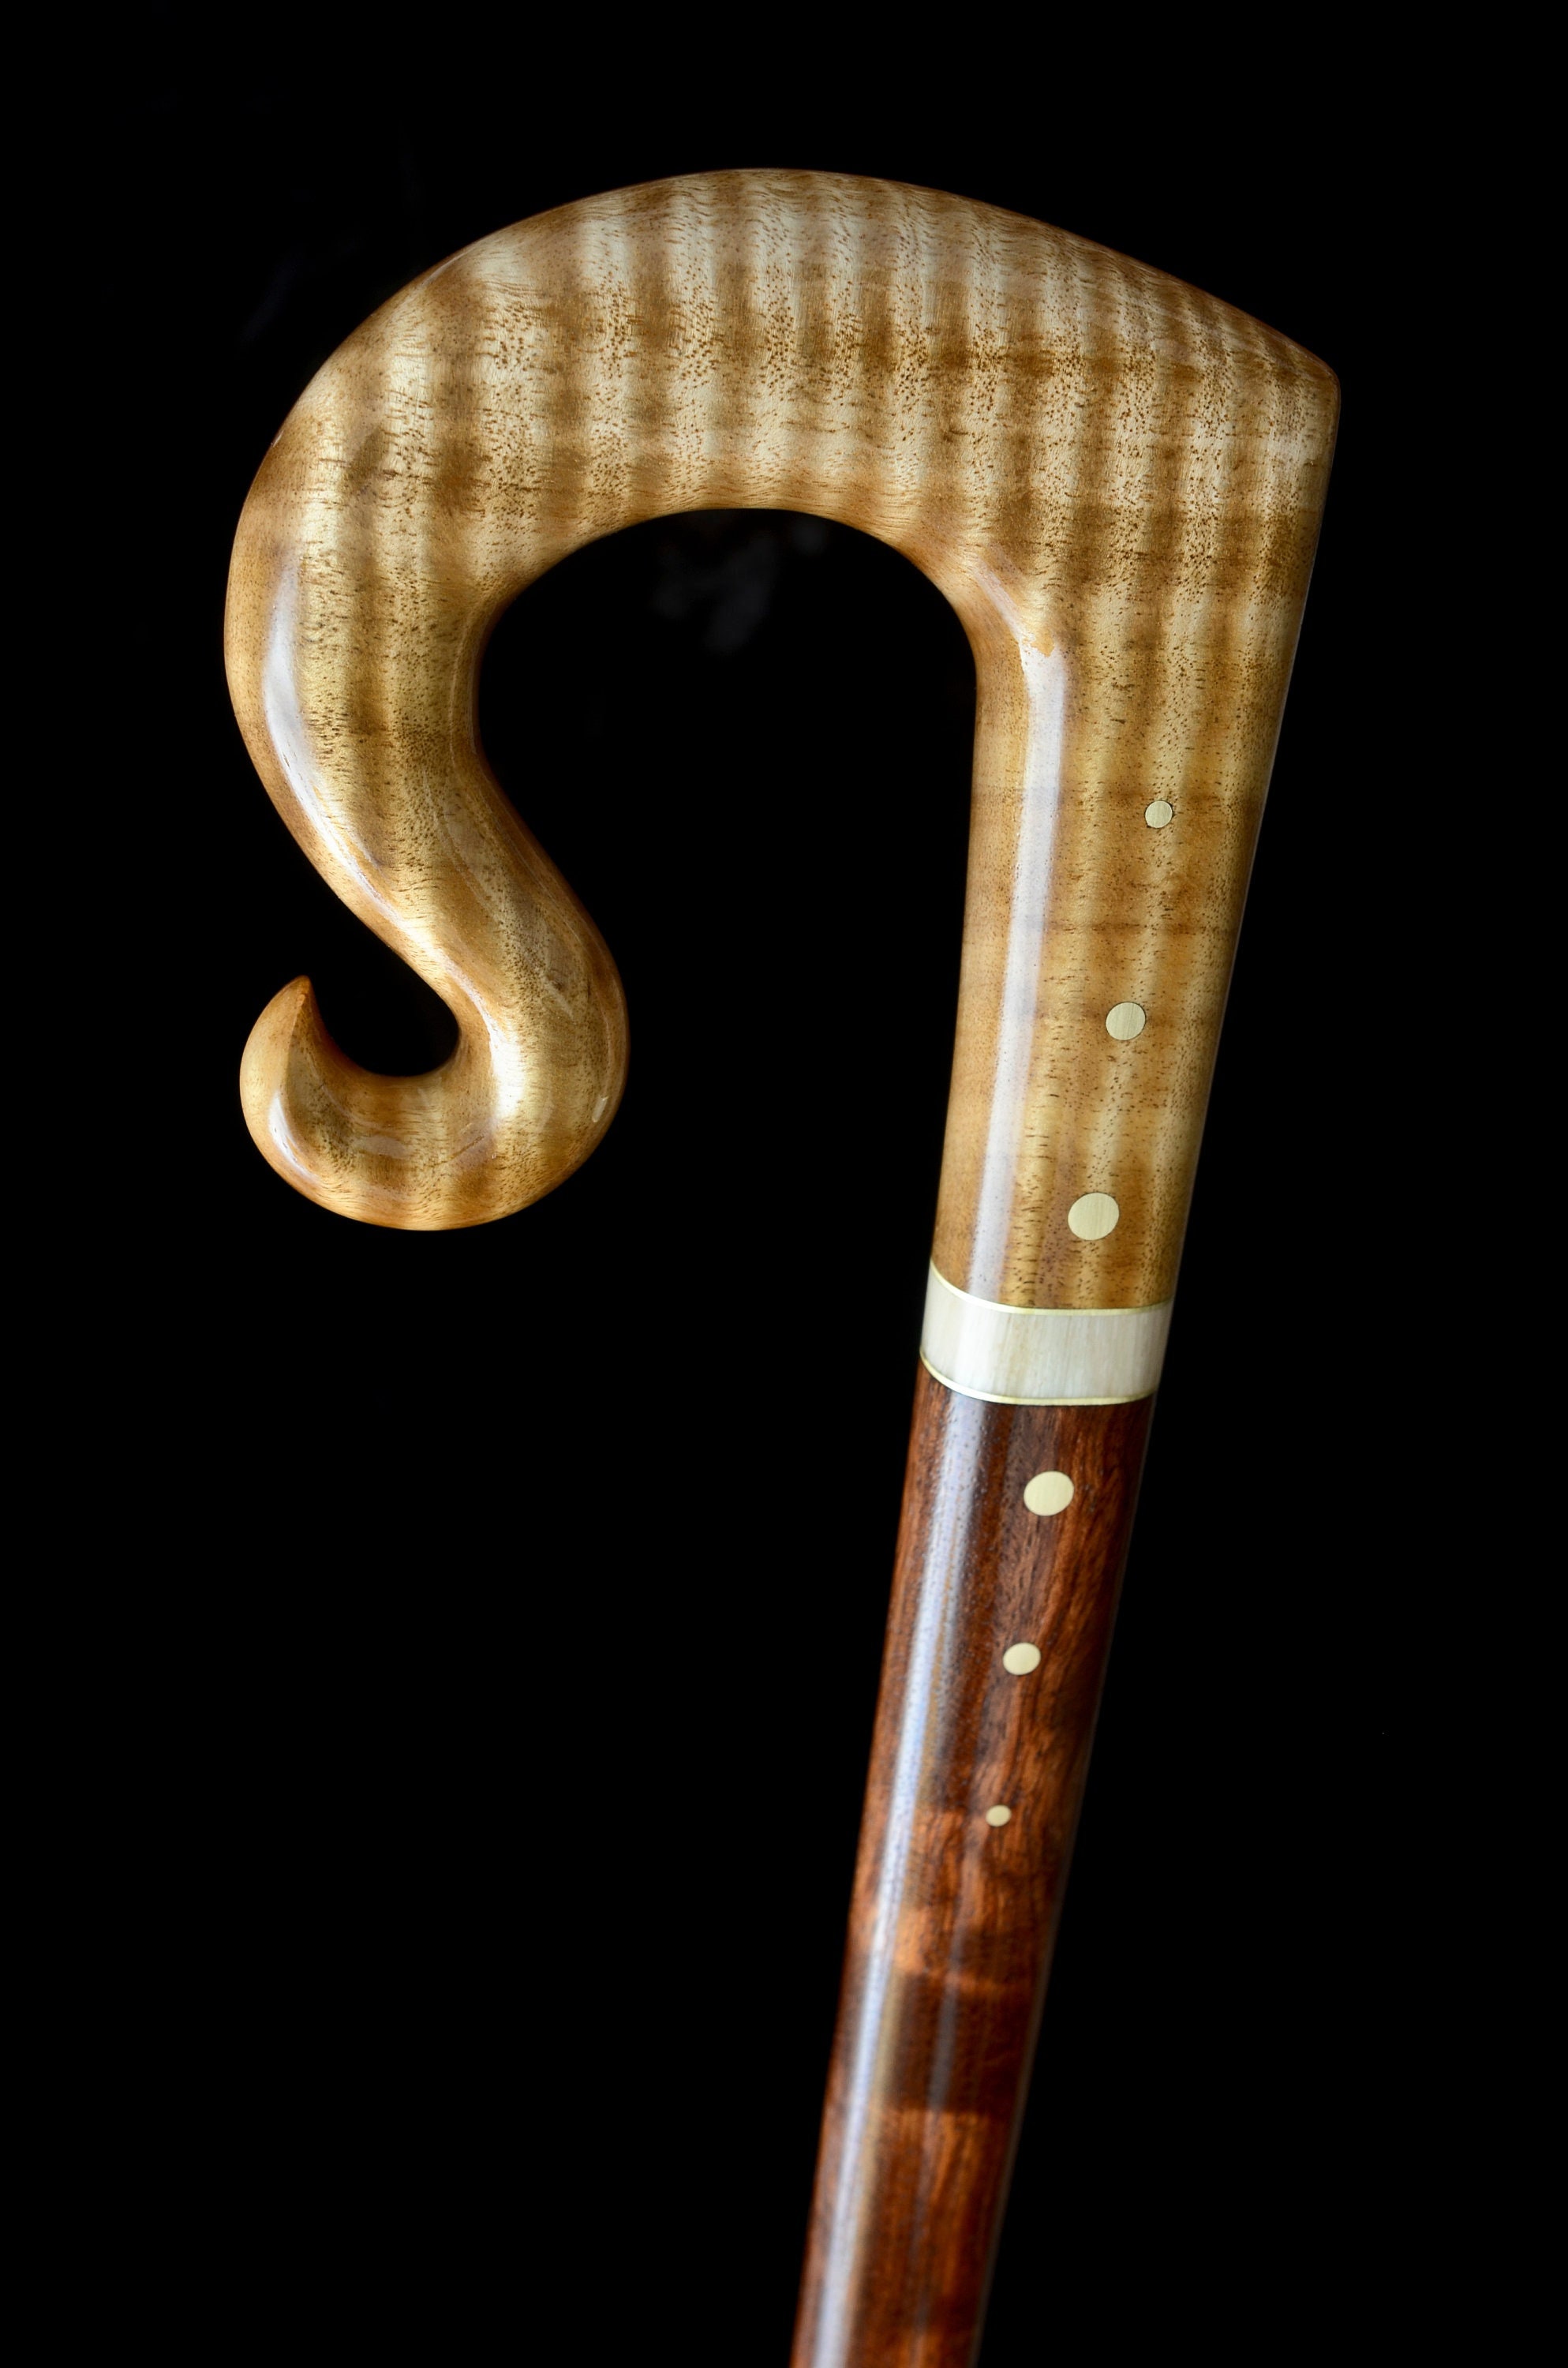 Bubinga Wood Walking Sticks – The Walking Stick Company